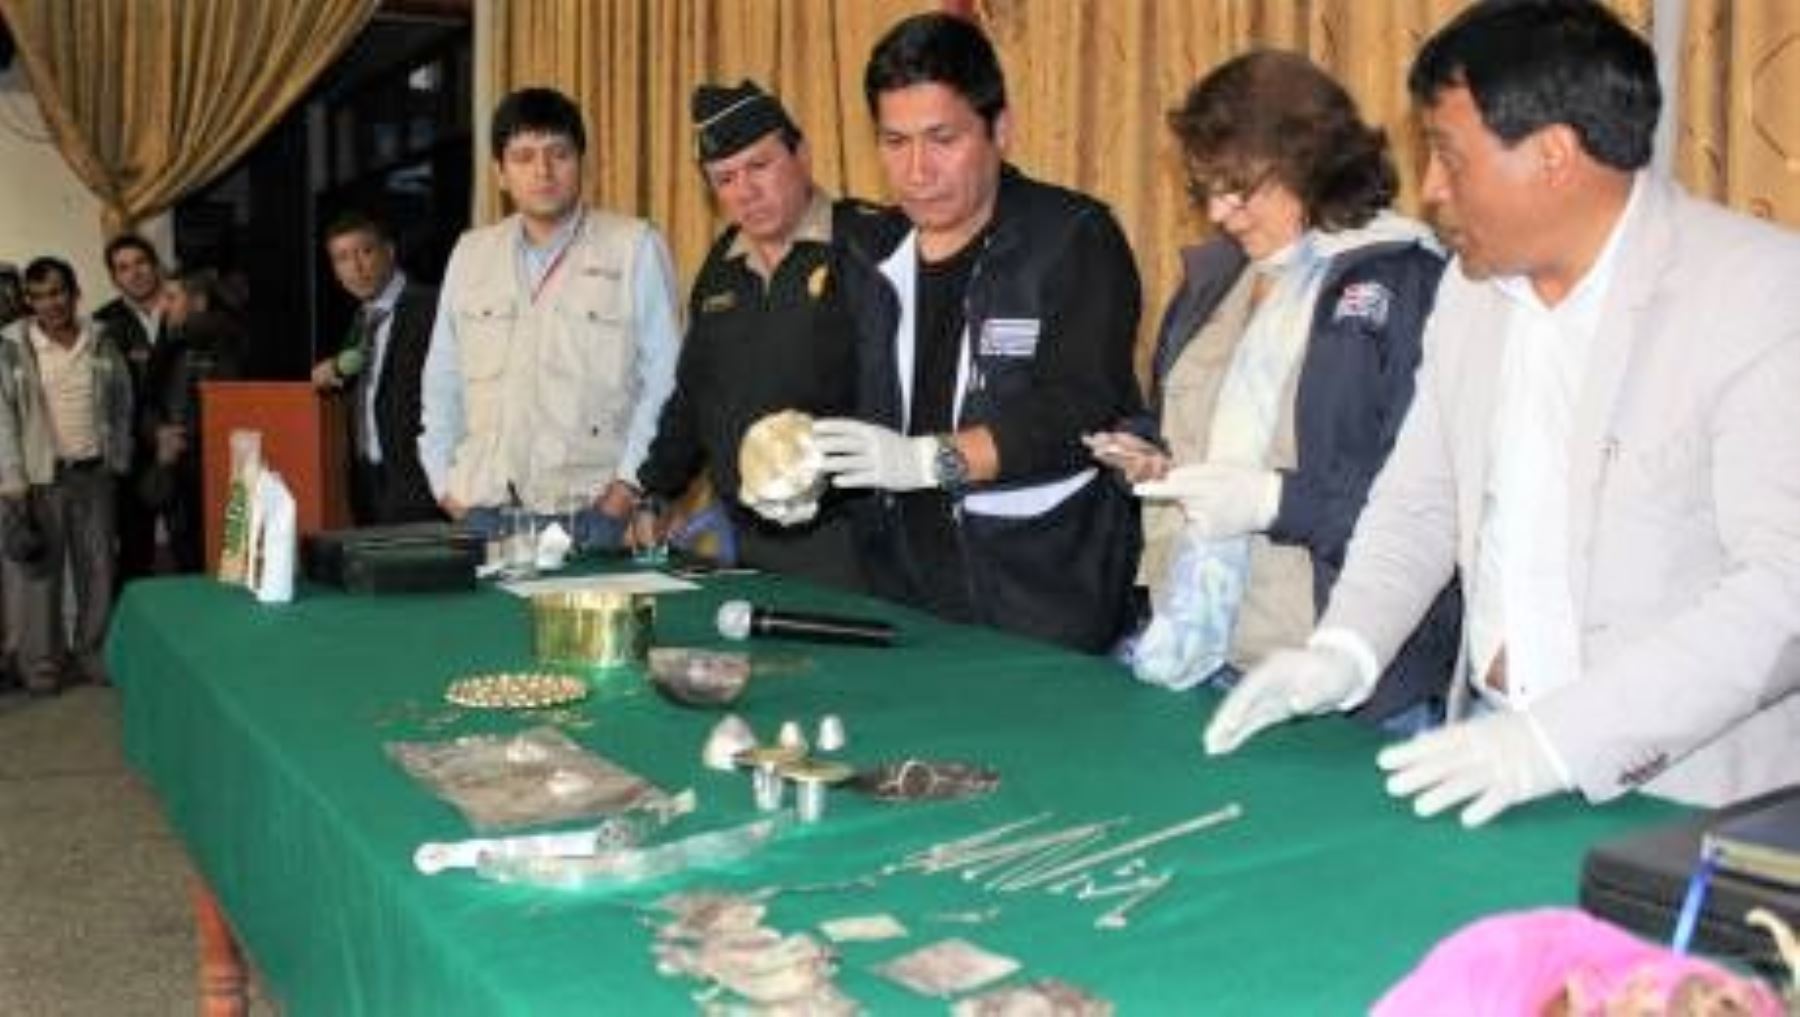 El arqueólogo de la DDC-Cajamarca, Francisco Esquerrez, realizó el inventario de las piezas arqueológicas halladas y devueltas por la población, llegando a registrar un total de 98 piezas, extraídas del Apu sagrado “Ilucán”.